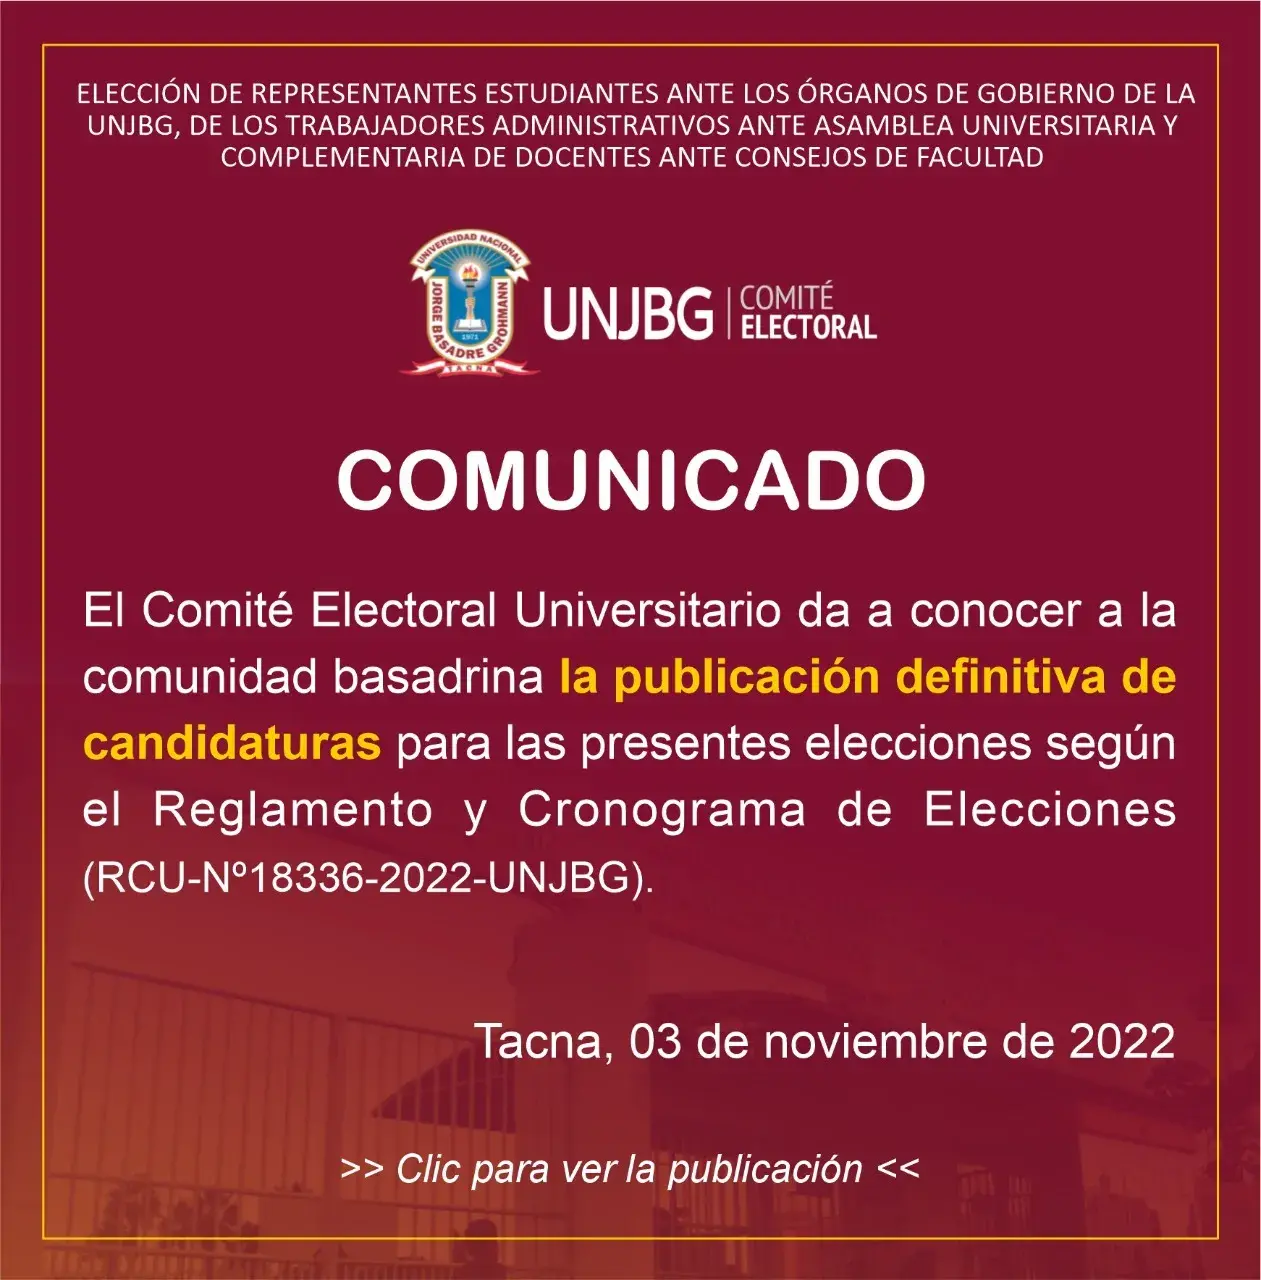 COMUNICADO - PUBLICACION DEFINITIVA DE CANDIDATURAS